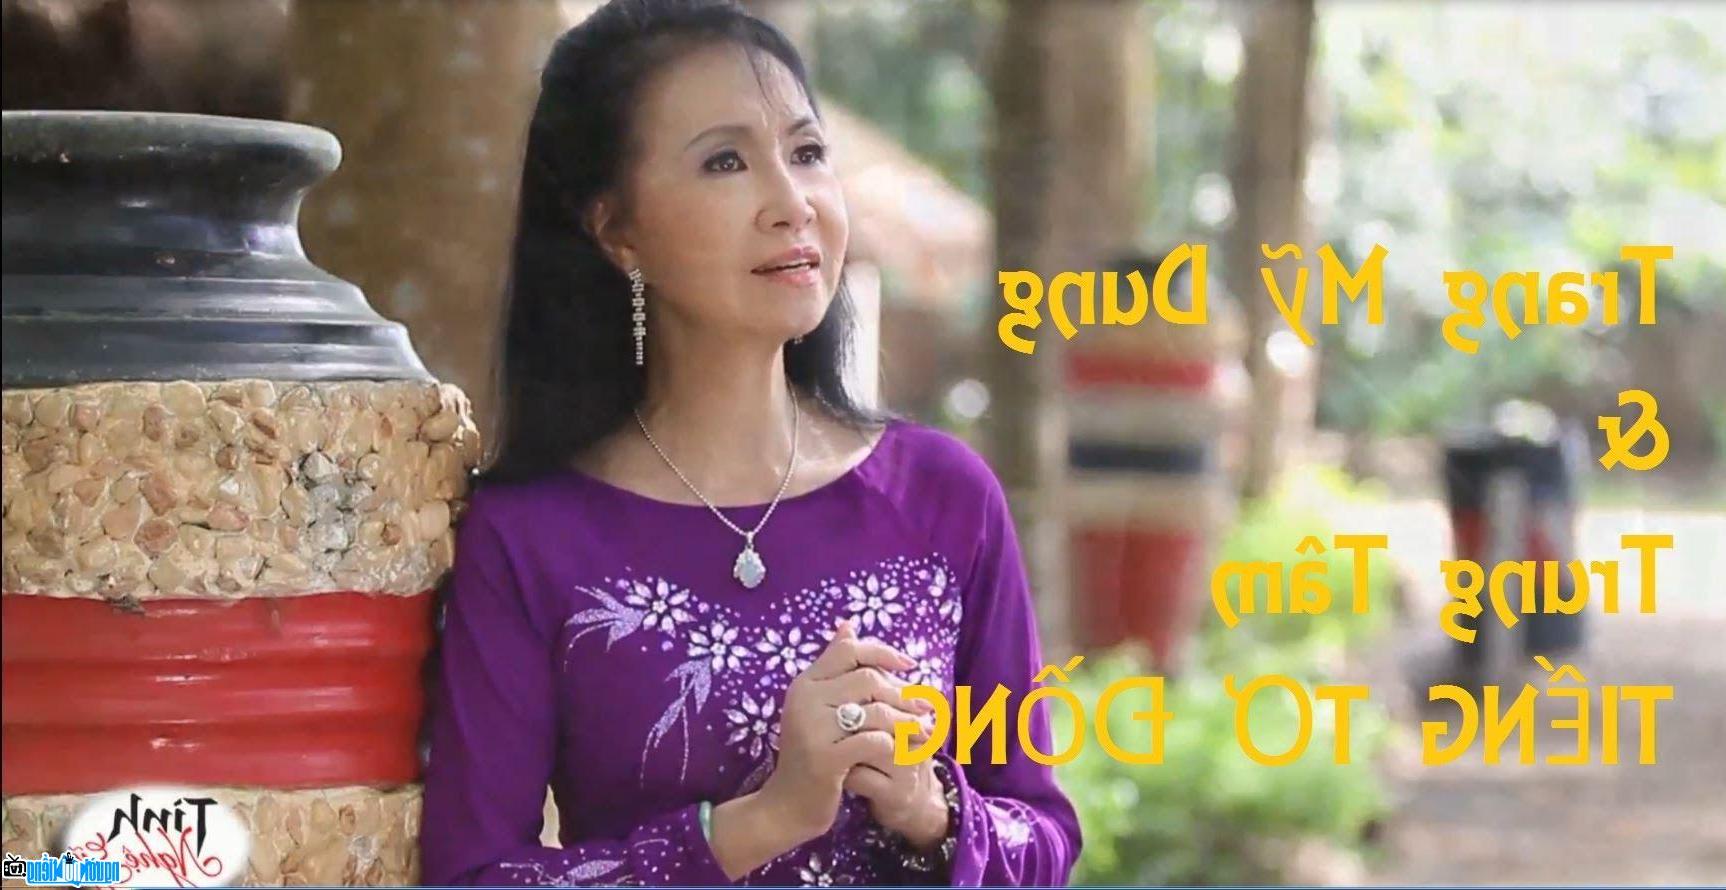 Hình ảnh mới nhất về Ca sĩ Trang Mỹ Dung